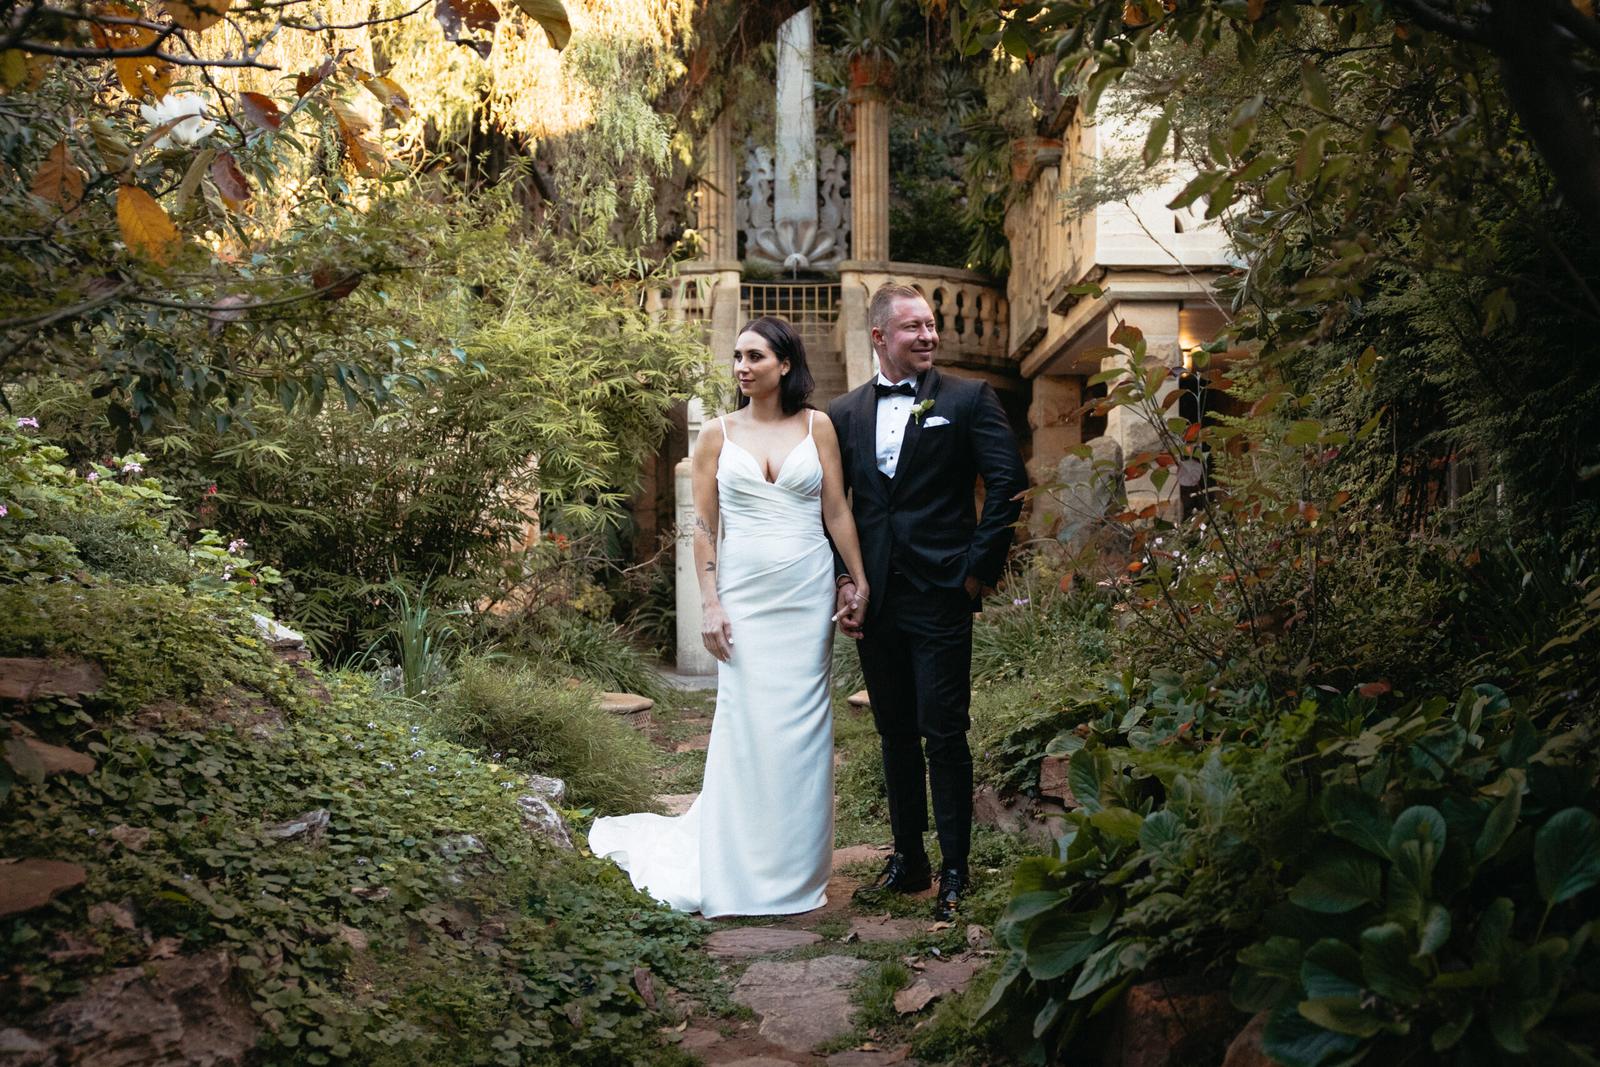 Wedding couple pose for photos in Shepstone gardens